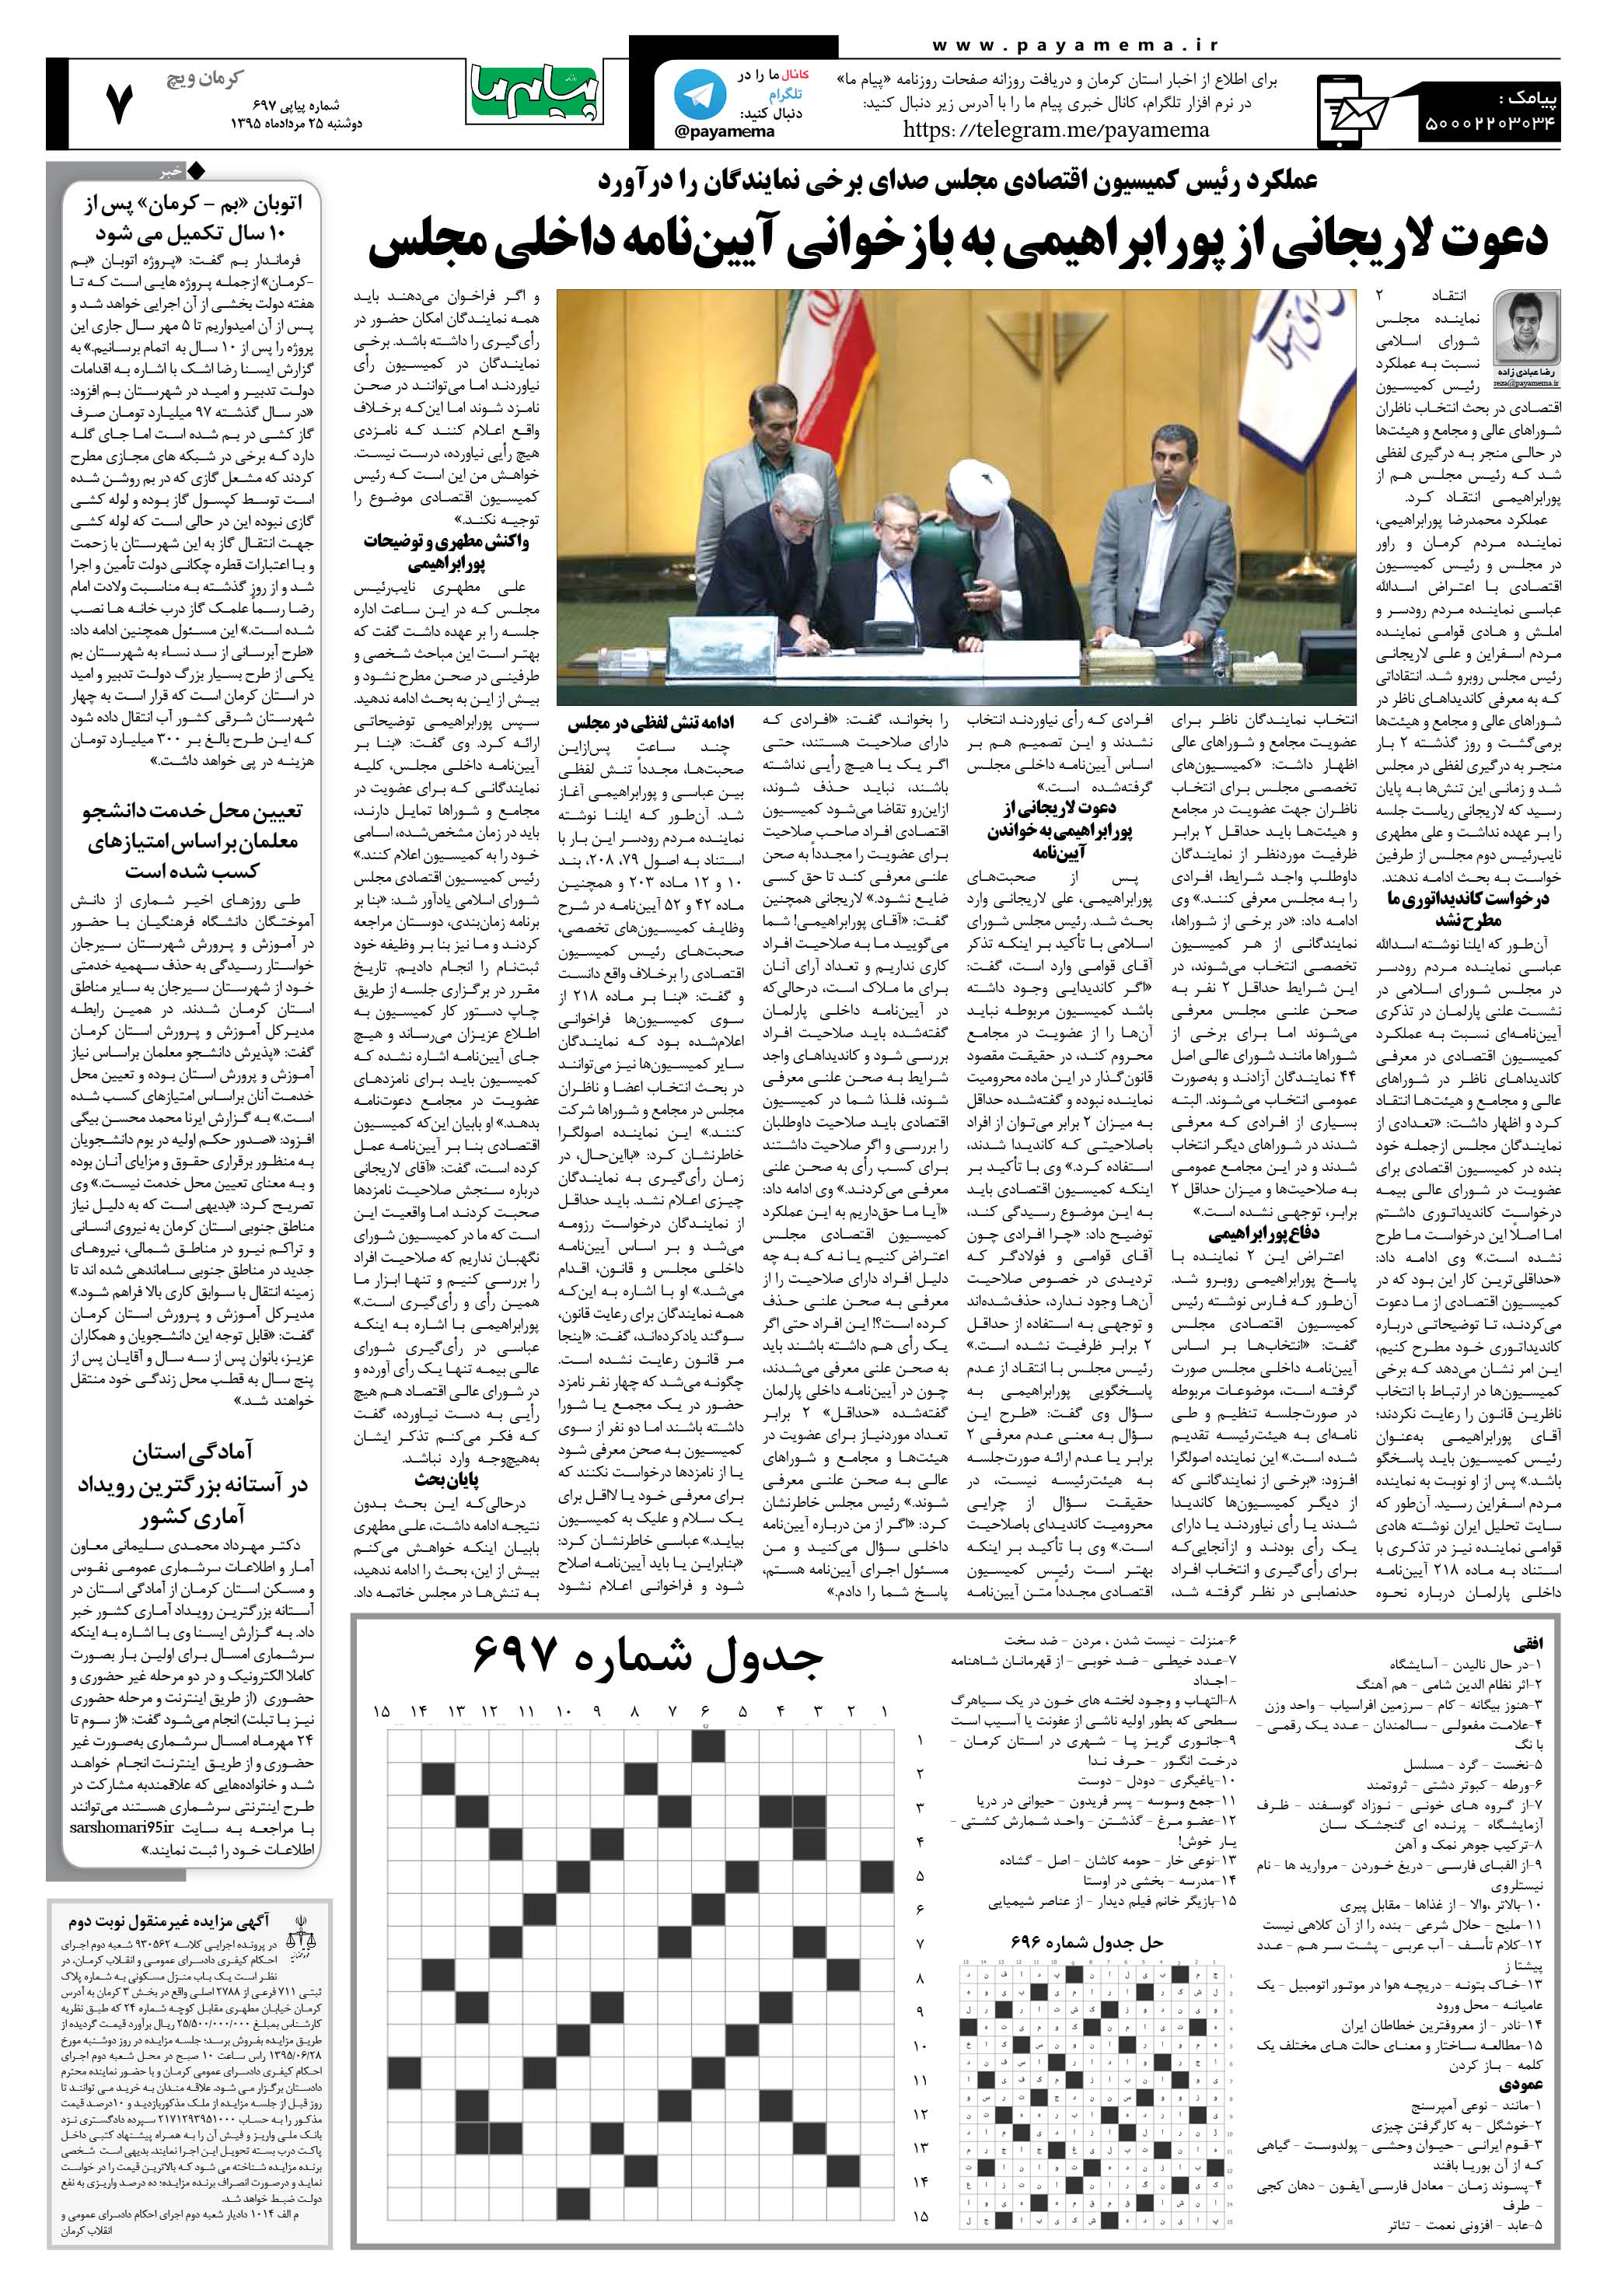 صفحه کرمان ویج شماره 697 روزنامه پیام ما